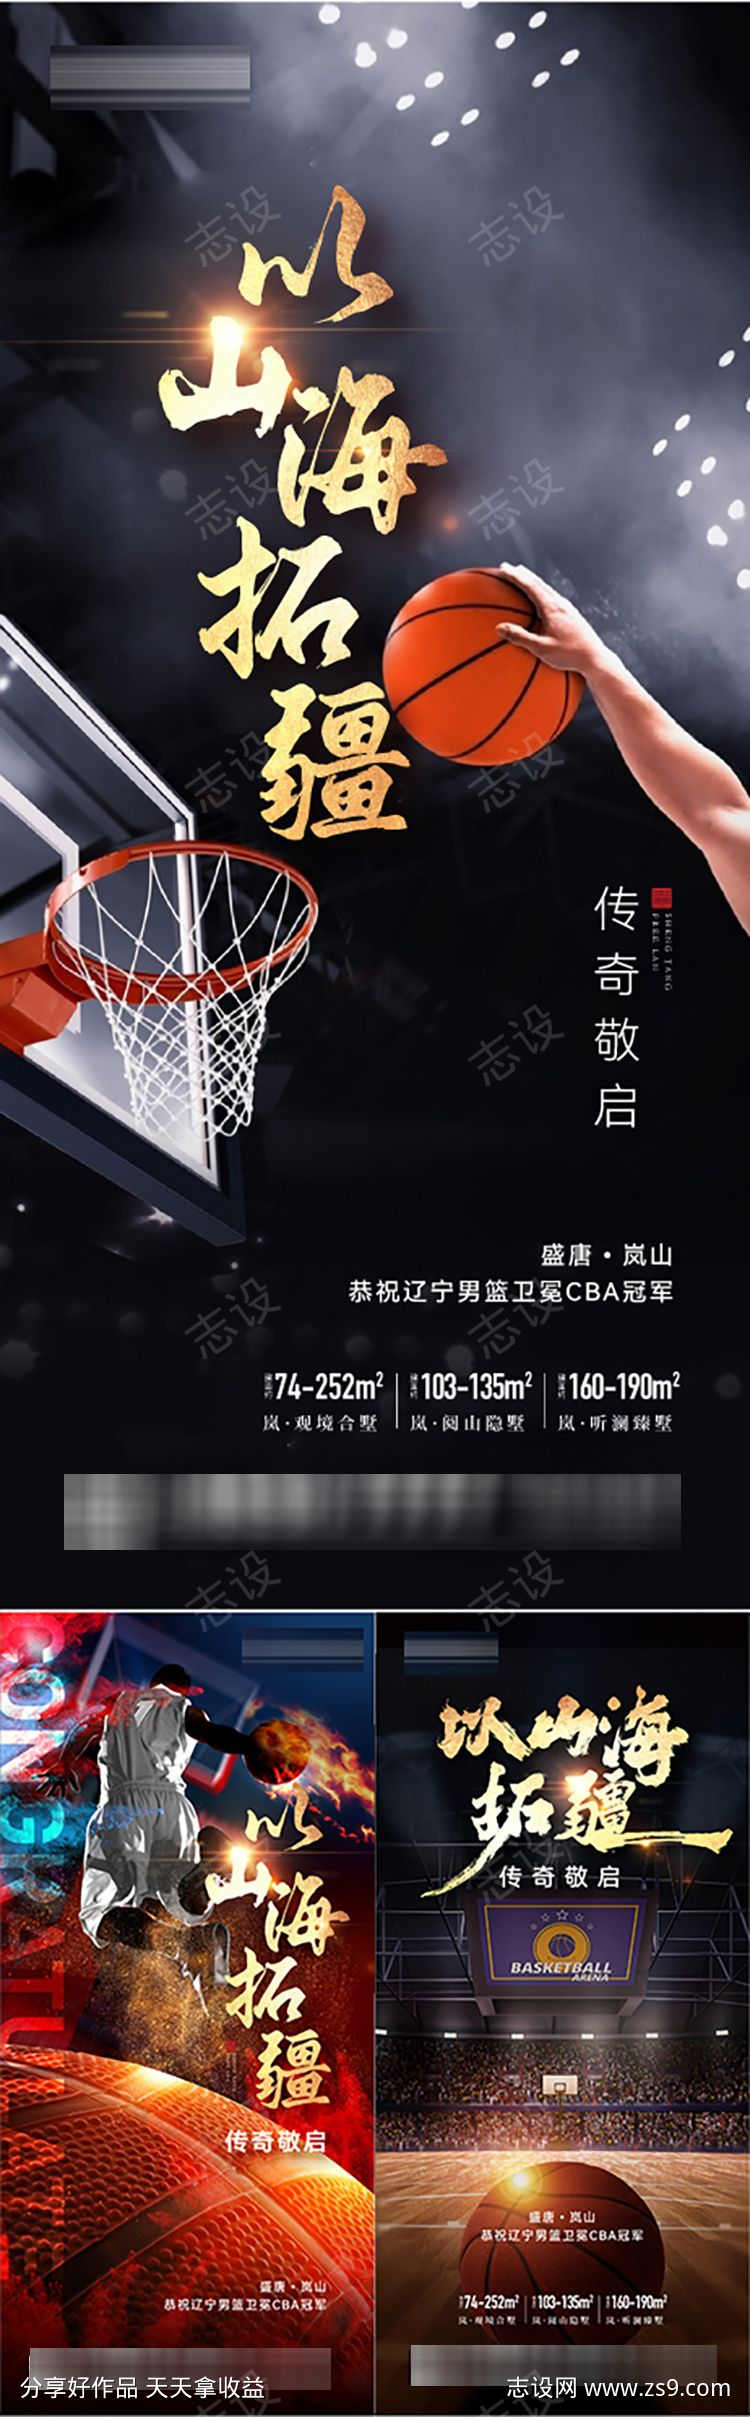 篮球赛冠军致敬传奇微信海报